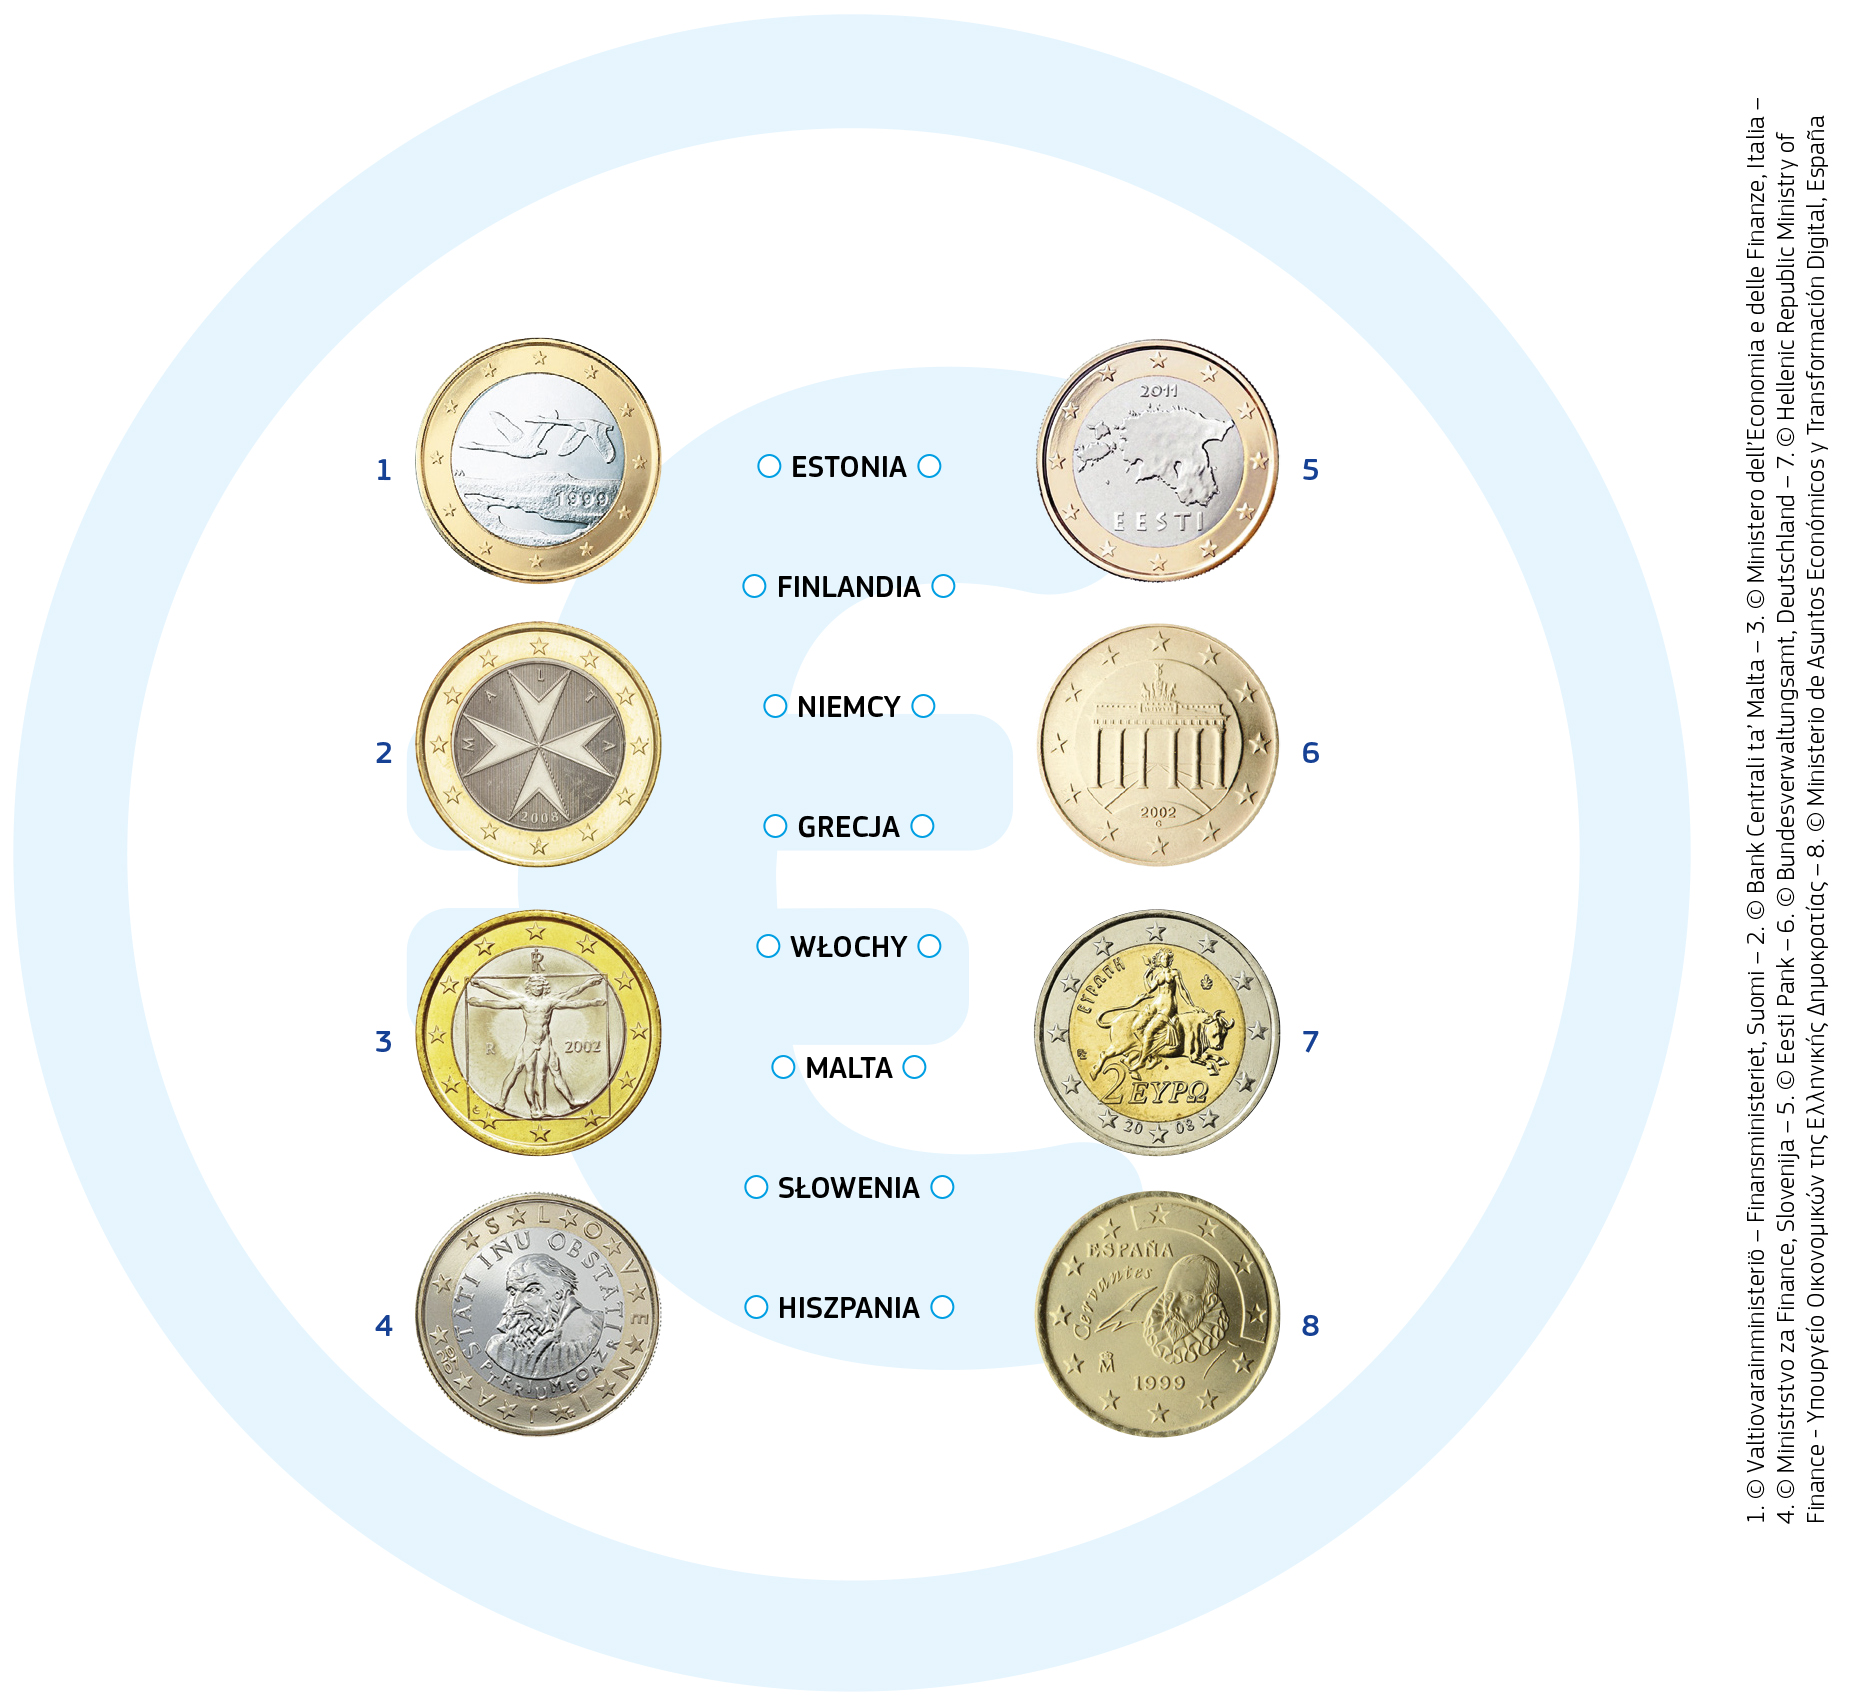 Jedna strona wszystkich monet euro przedstawia mapę Europy i jest taka sama dla każdego kraju.  Na drugiej stronie każde państwo umieszcza własny motyw. Oto kilka przykładów: 
            Moneta o nominale 1 euro w Finlandii pokazuje dwa lecące łabędzie.
            Monety o nominale 1 i 2 euro na Malcie przedstawiają symbol nazywany maltańskim krzyżem.
            Włoskie monety o nominale 1 euro przedstawiają słynny rysunek Leonarda da Vinci ilustrujący idealne proporcje ludzkiego ciała.
            Grecka moneta o nominale 2 euro pokazuje Europę uprowadzoną przez Zeusa, który przybrał postać byka. Europa jest postacią z greckiej mitologii, której imieniem nazwano Europę.
            